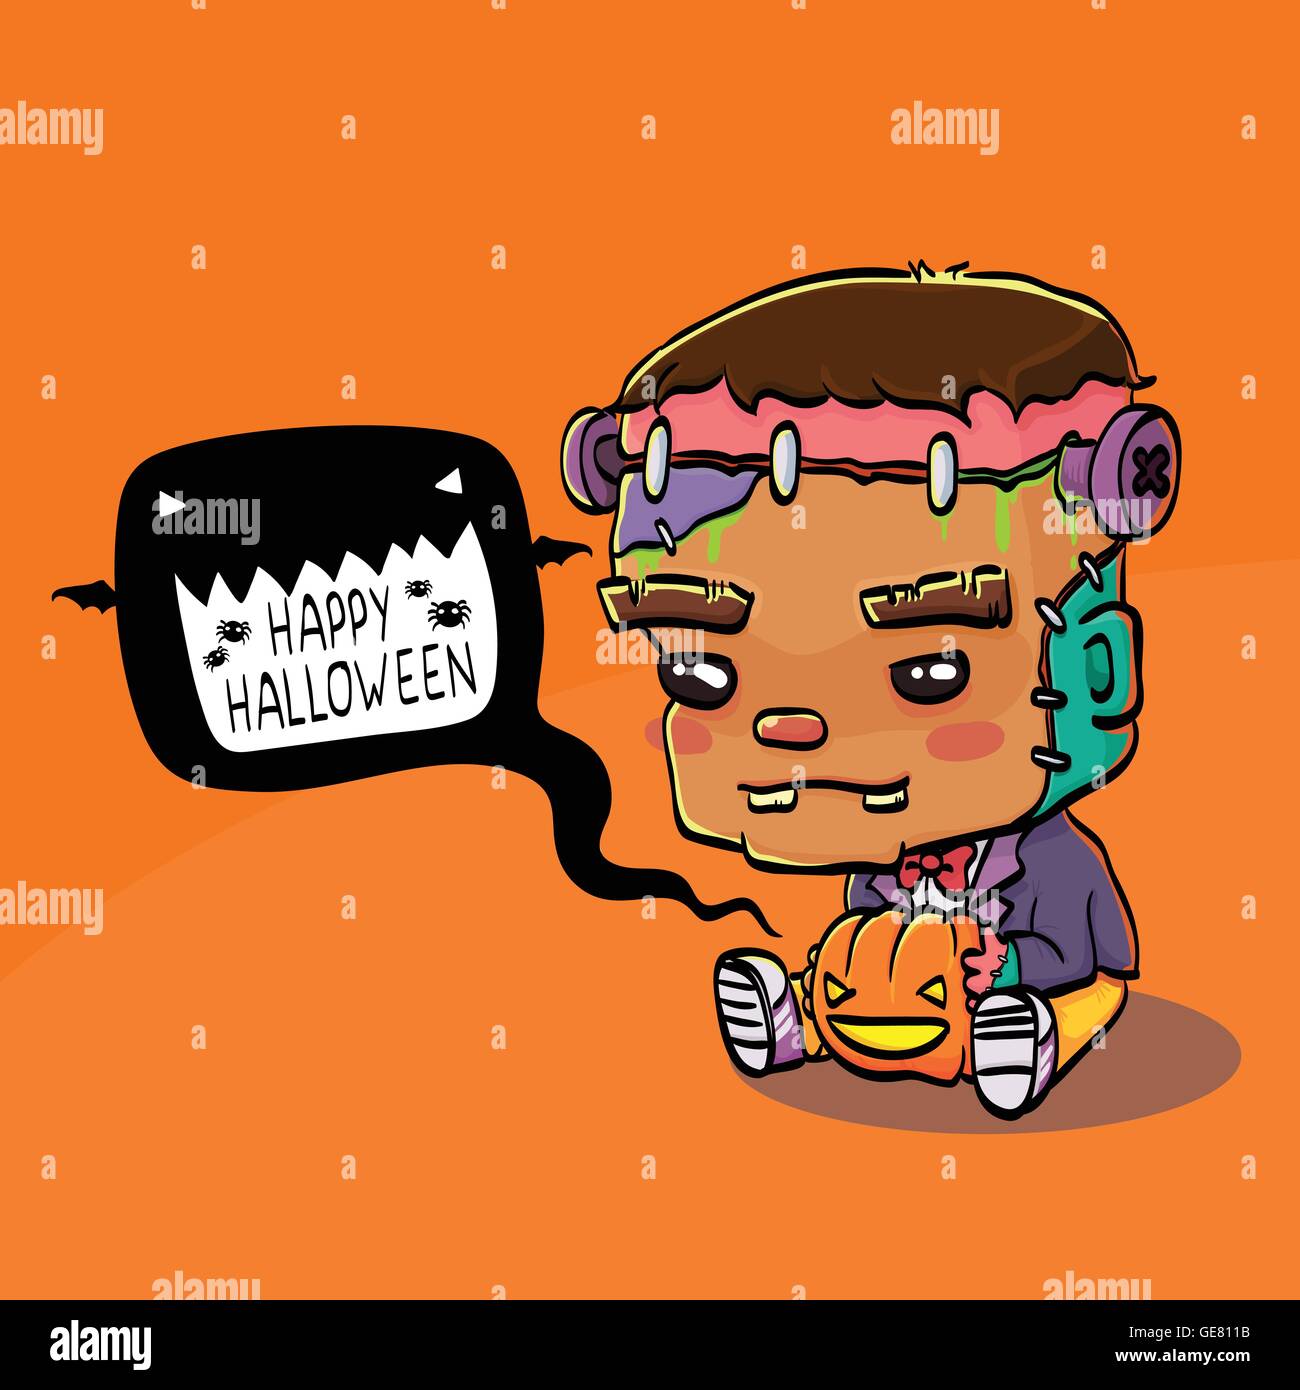 Vektor-Illustration von niedlichen Cartoon Charakter Frankenstein für Halloween Grußkarte Stock Vektor